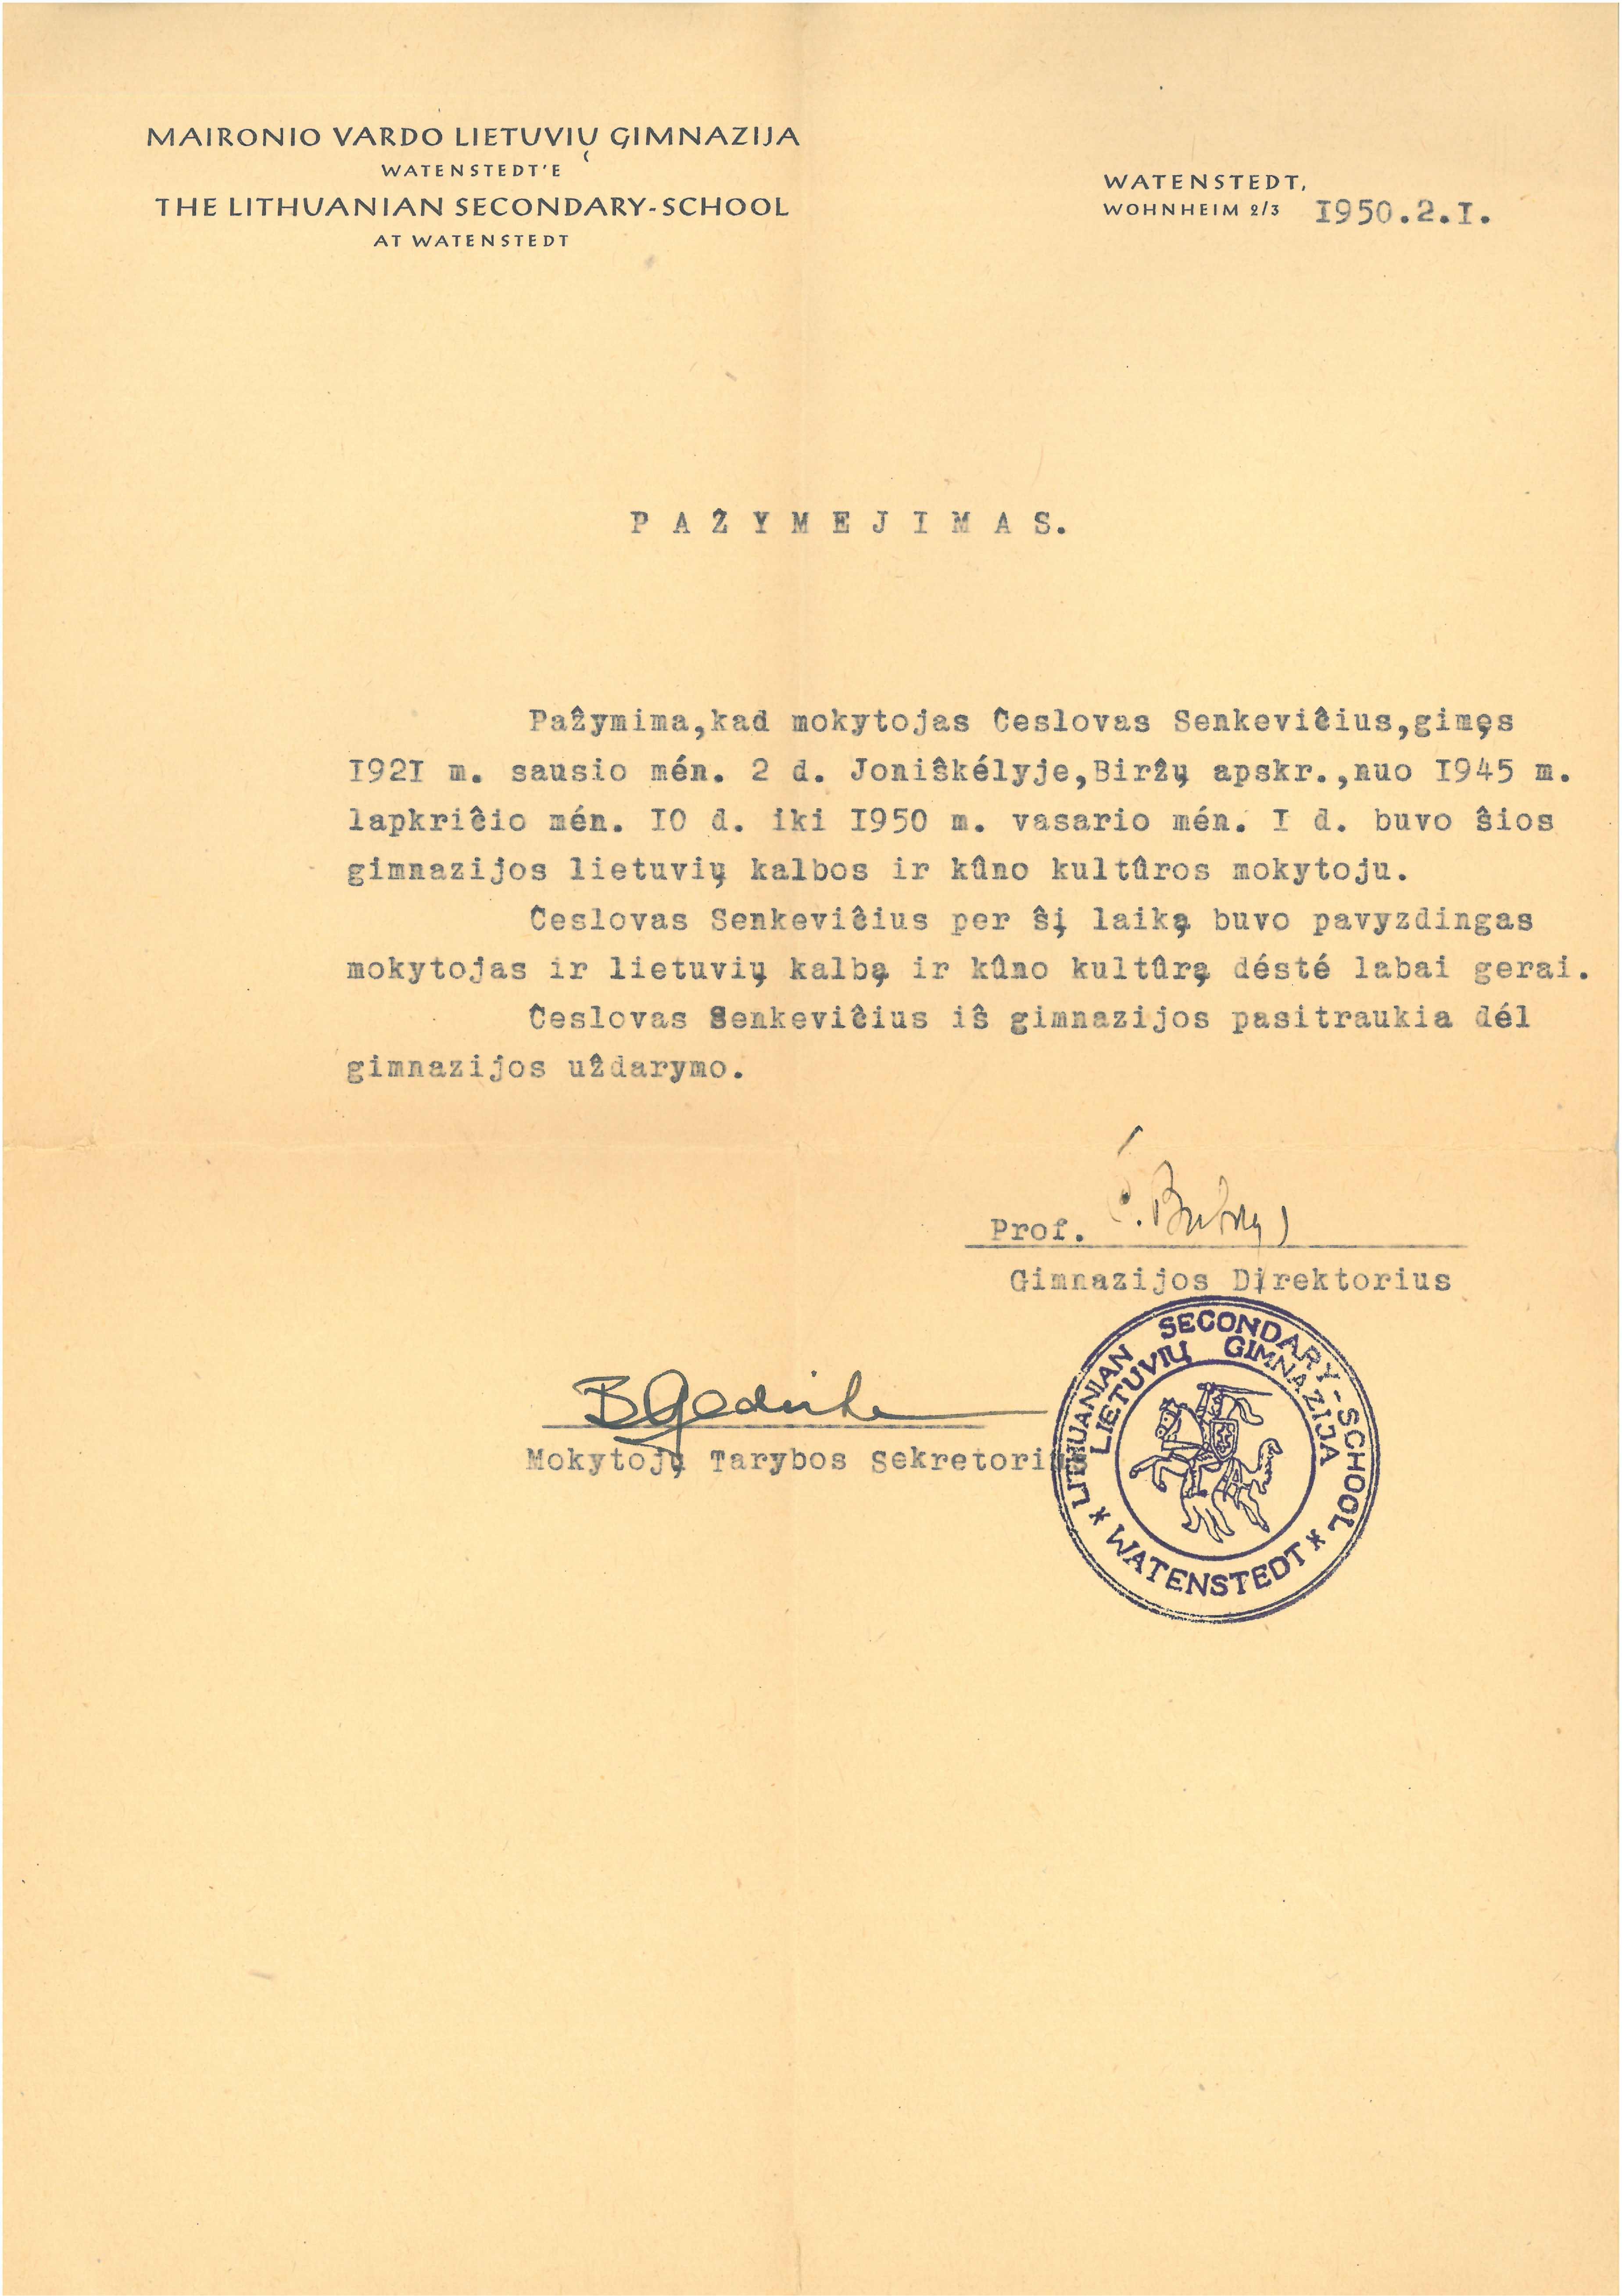 Maironio vardo lietuvių gimnazijos Watenstedtʼe liudijimas, išduotas Česlovui Senkevičiui. 1950 m. vasario 1 d. 